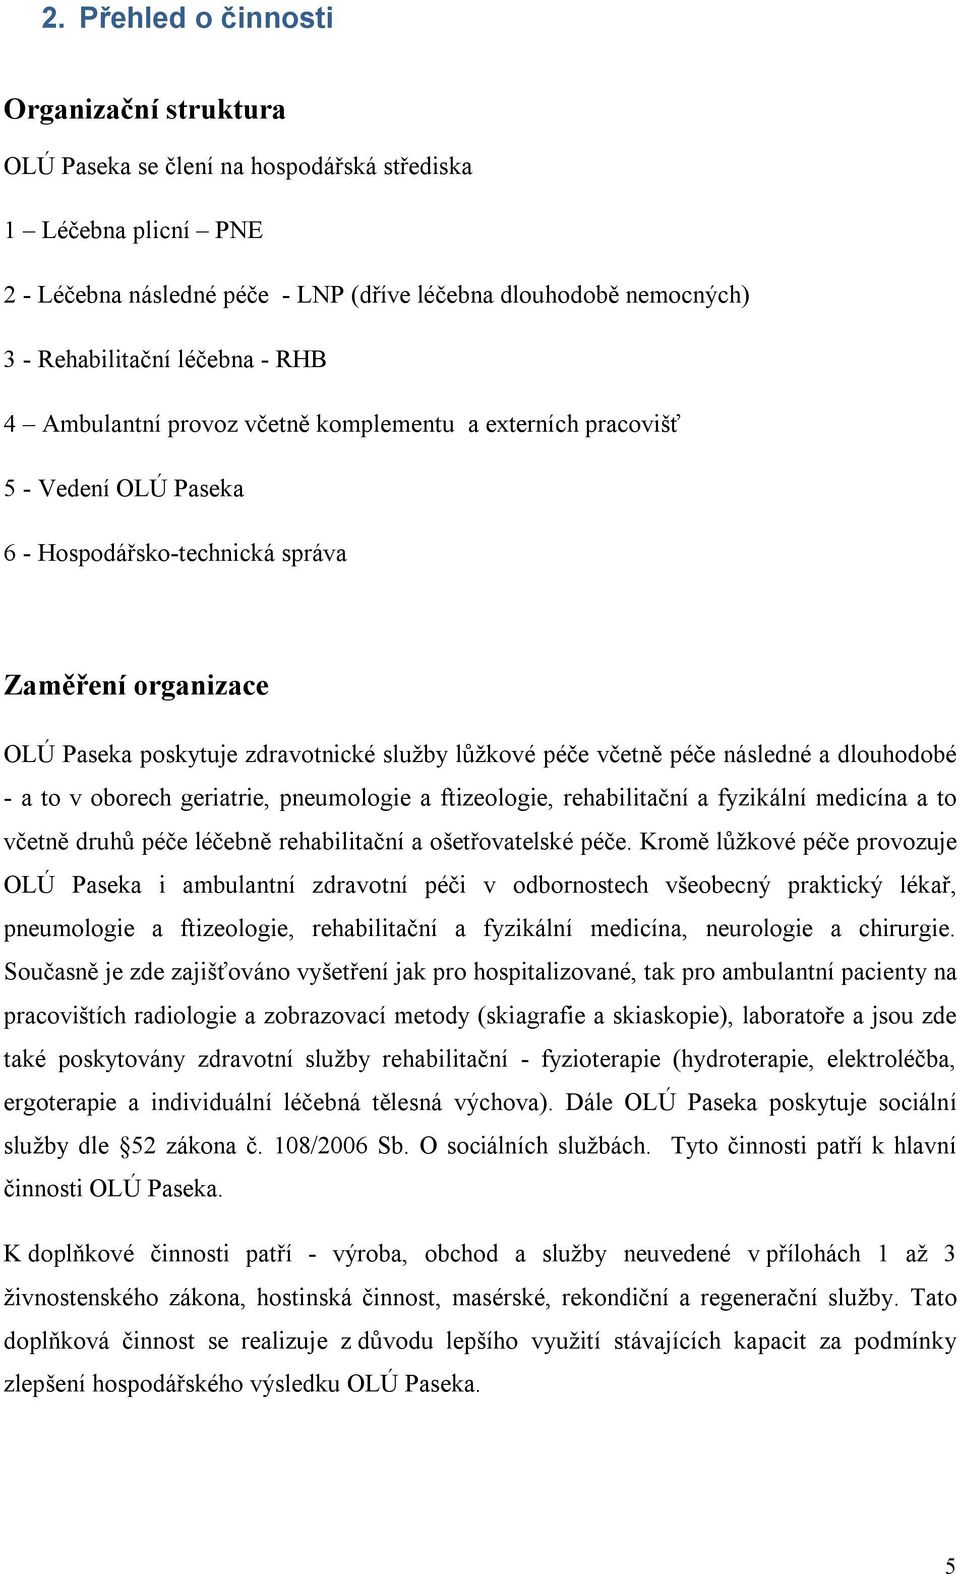 Výroční. zpráva. OLÚ Paseka,p.o. Paseka - PDF Free Download